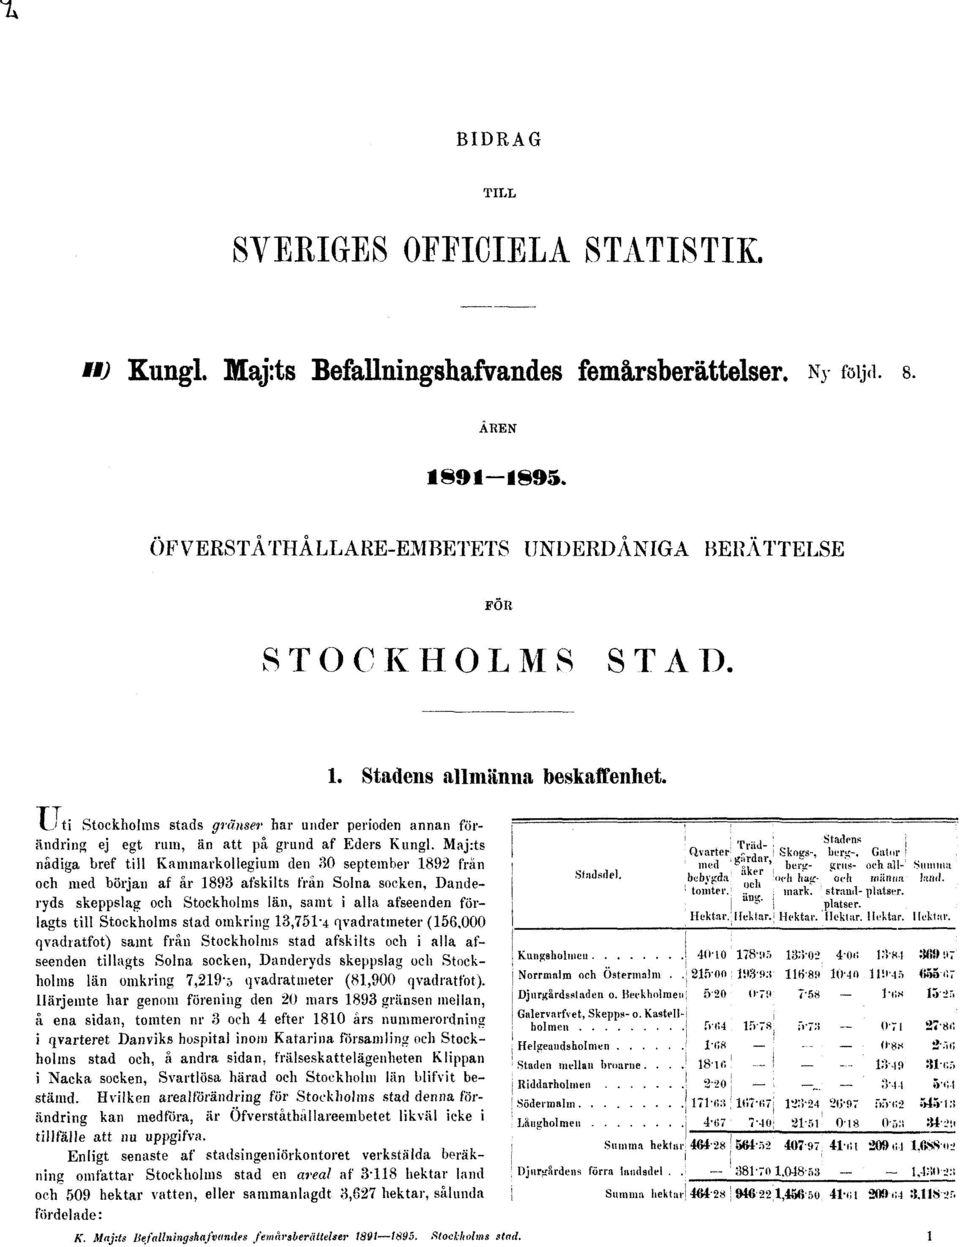 Majrts nådiga bref till Kammarkollegium den 30 september 1892 frän och med början af år 1893 åtskilts från Solna socken, Danderyds skeppslag och Stockholms län, samt i alla afseenden förlagts till